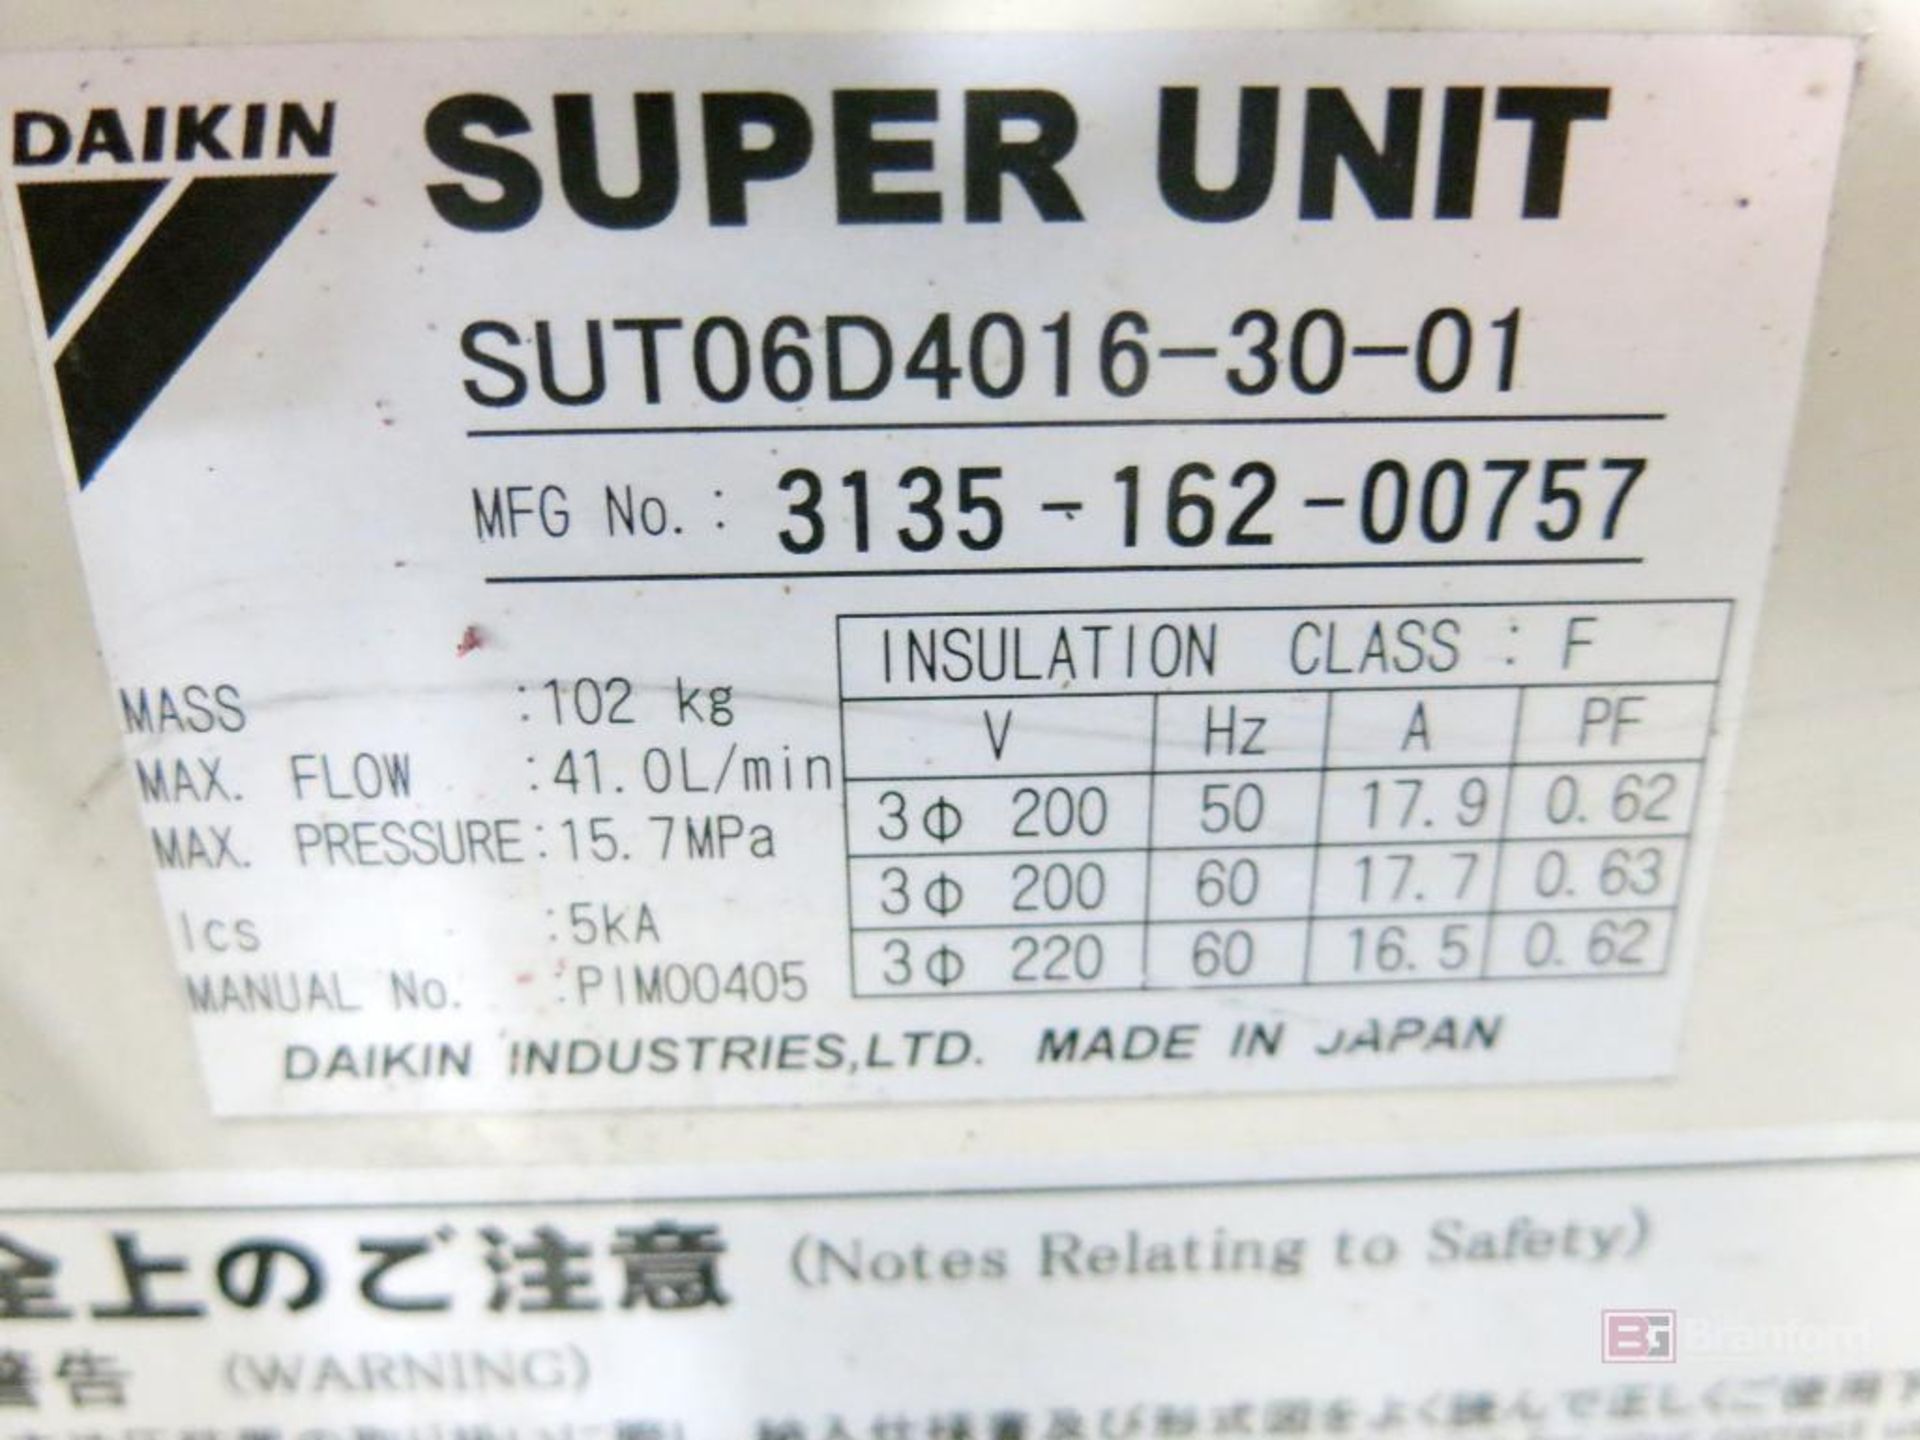 Daiken Super Unit Model SUT06D4016-30-01 Inverter Hydraulic Unit - Image 3 of 3